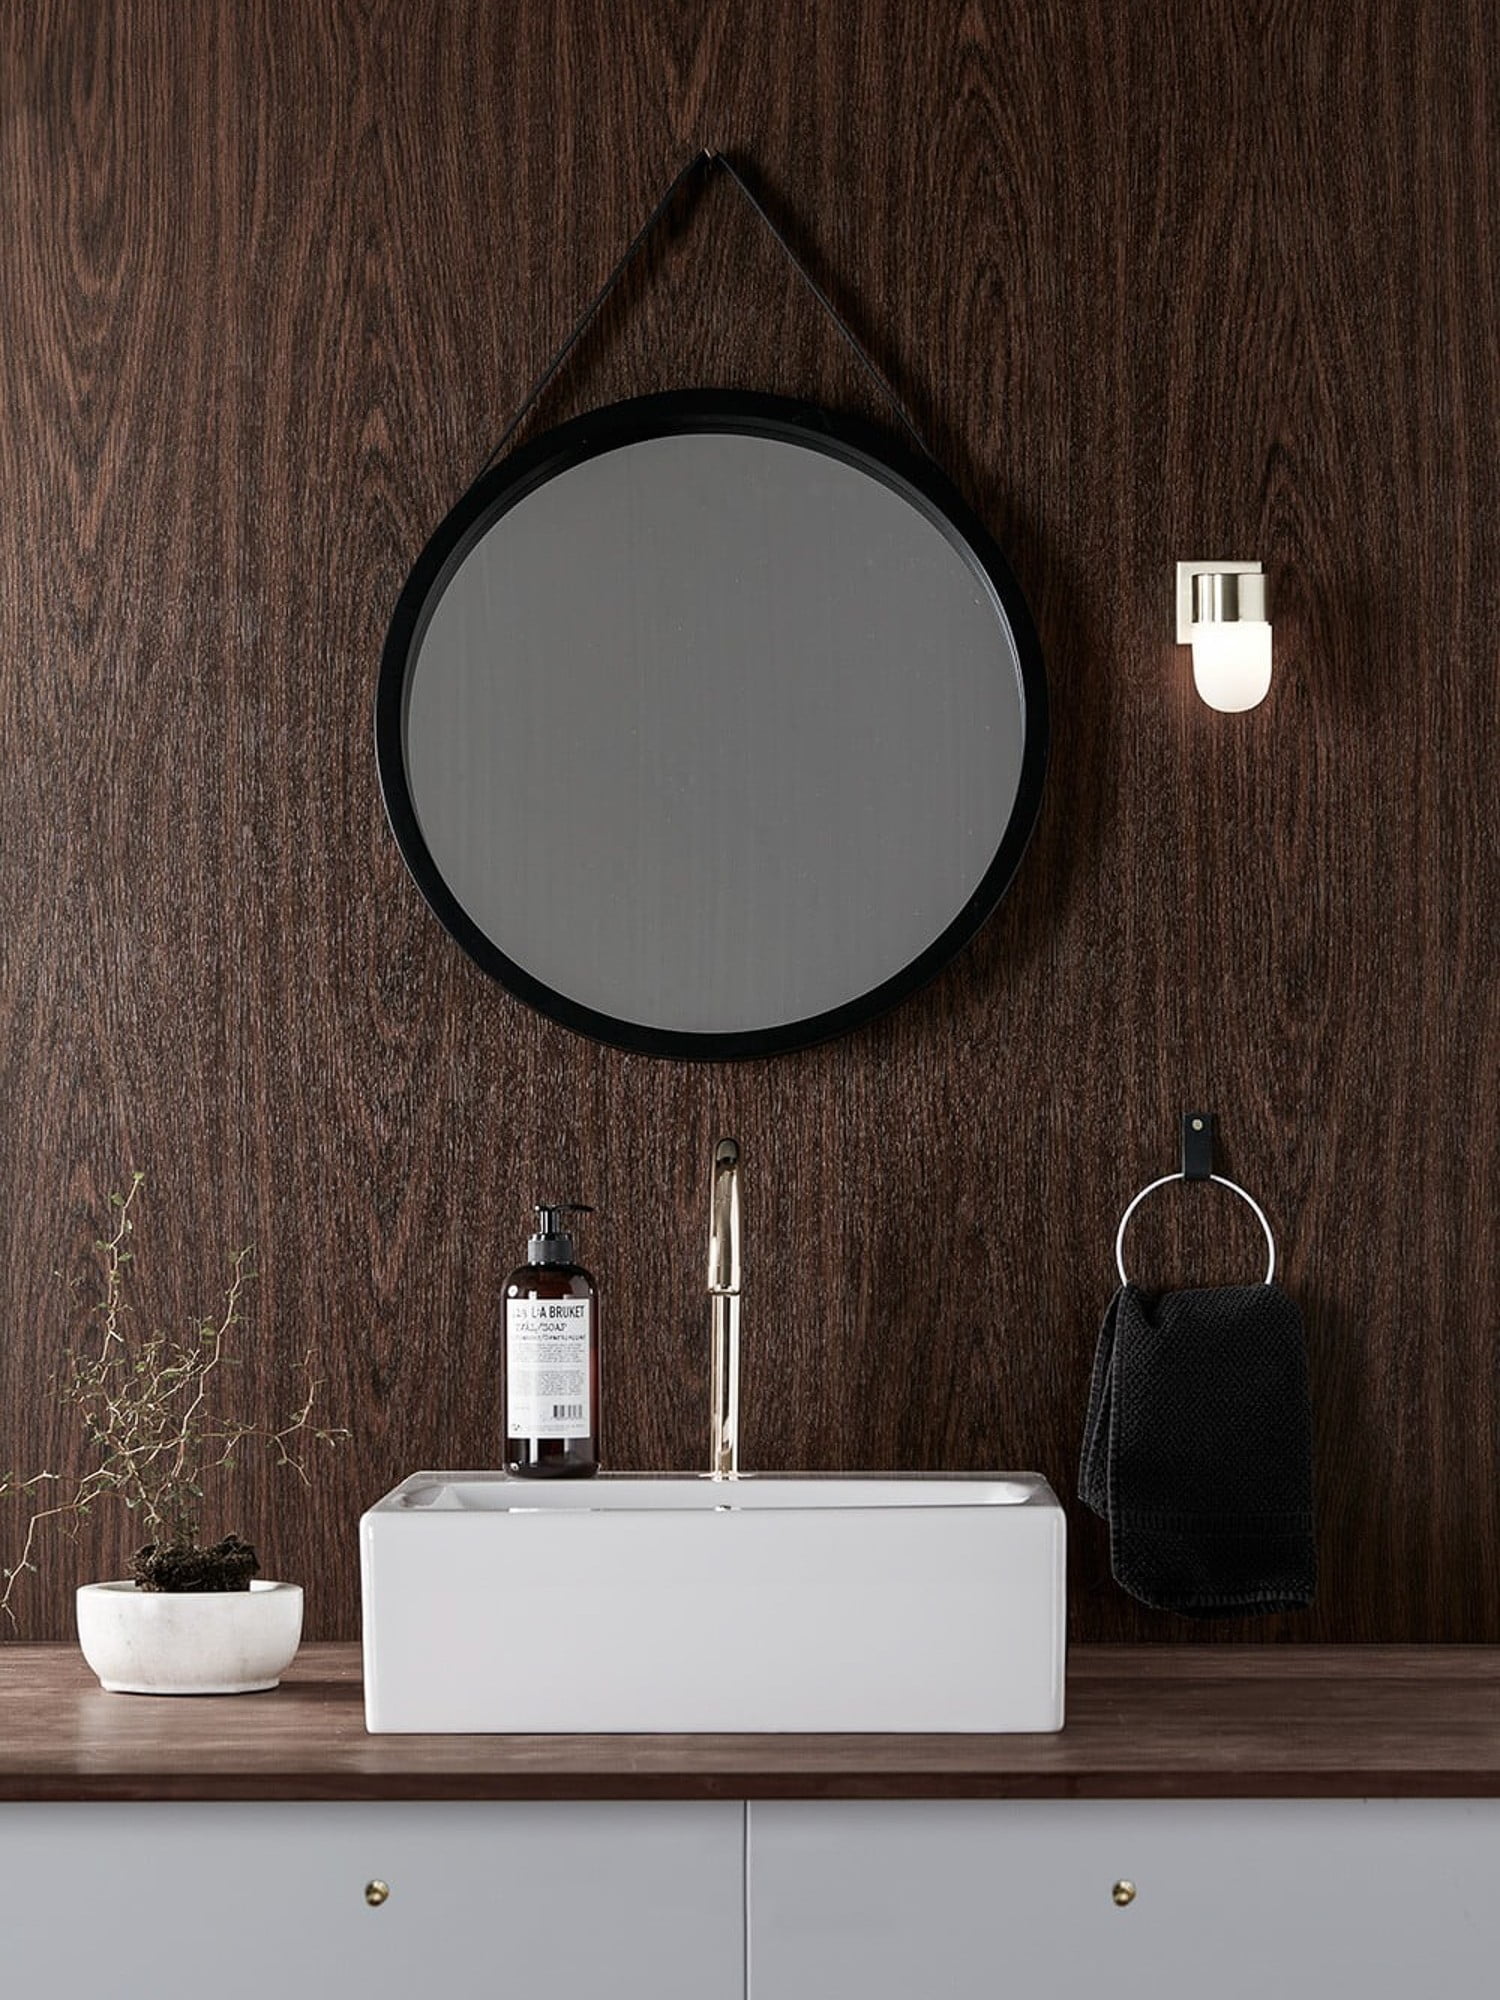 Nástěnné svítidlo vedle zrcadla může plnit i dekorativní funkci.